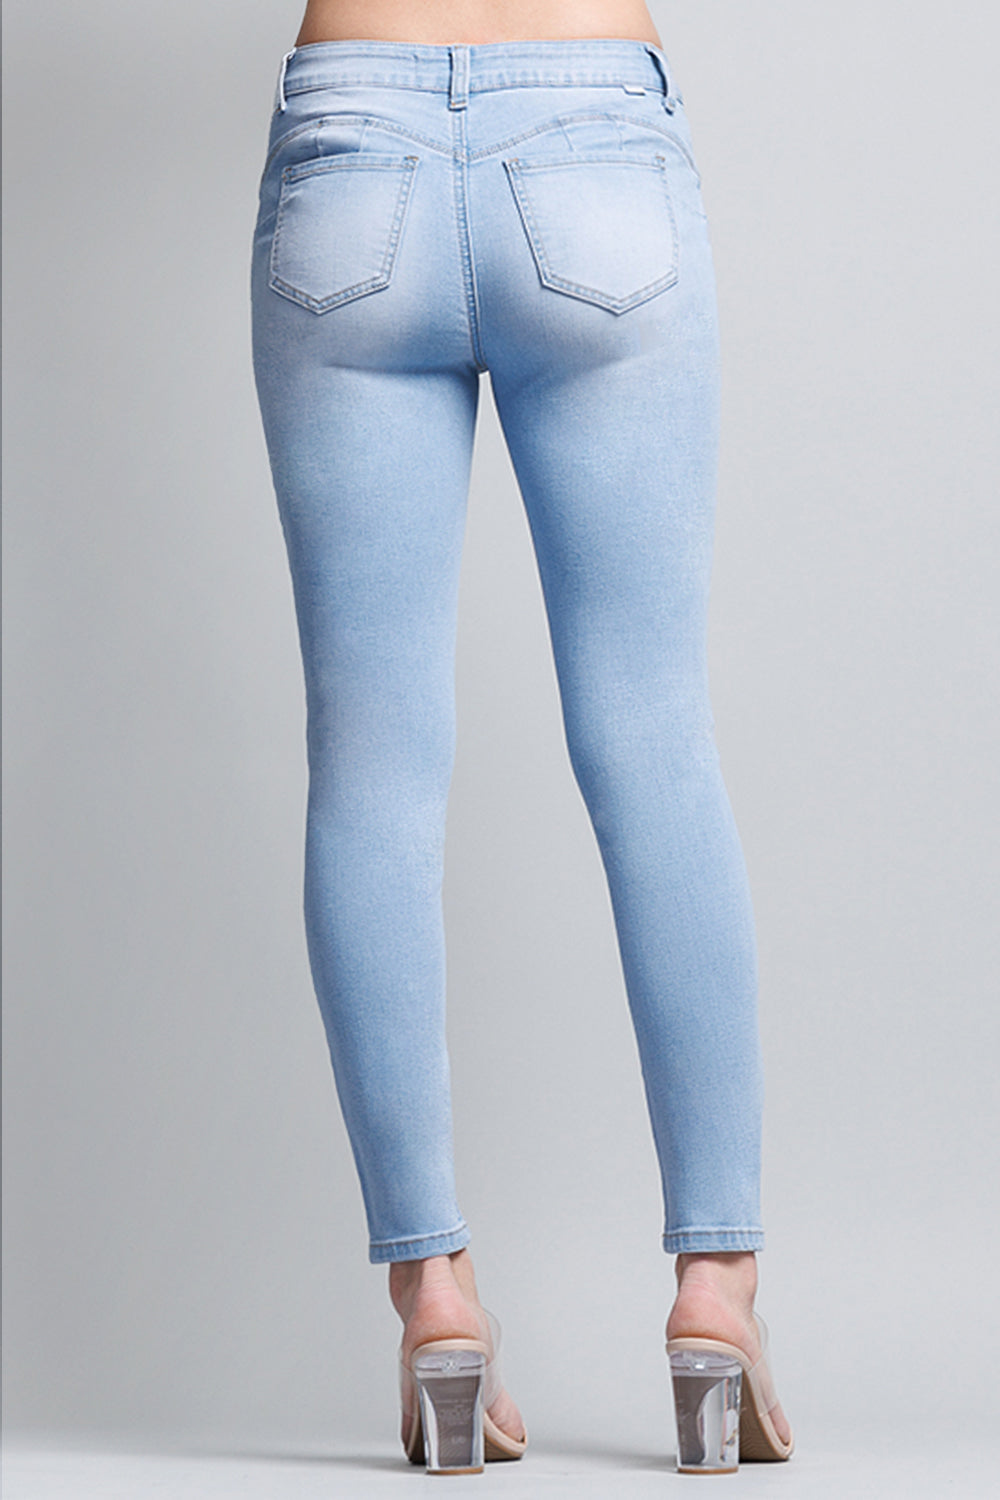 Jeans Skinny Fit Push Up Denim Medium Blue